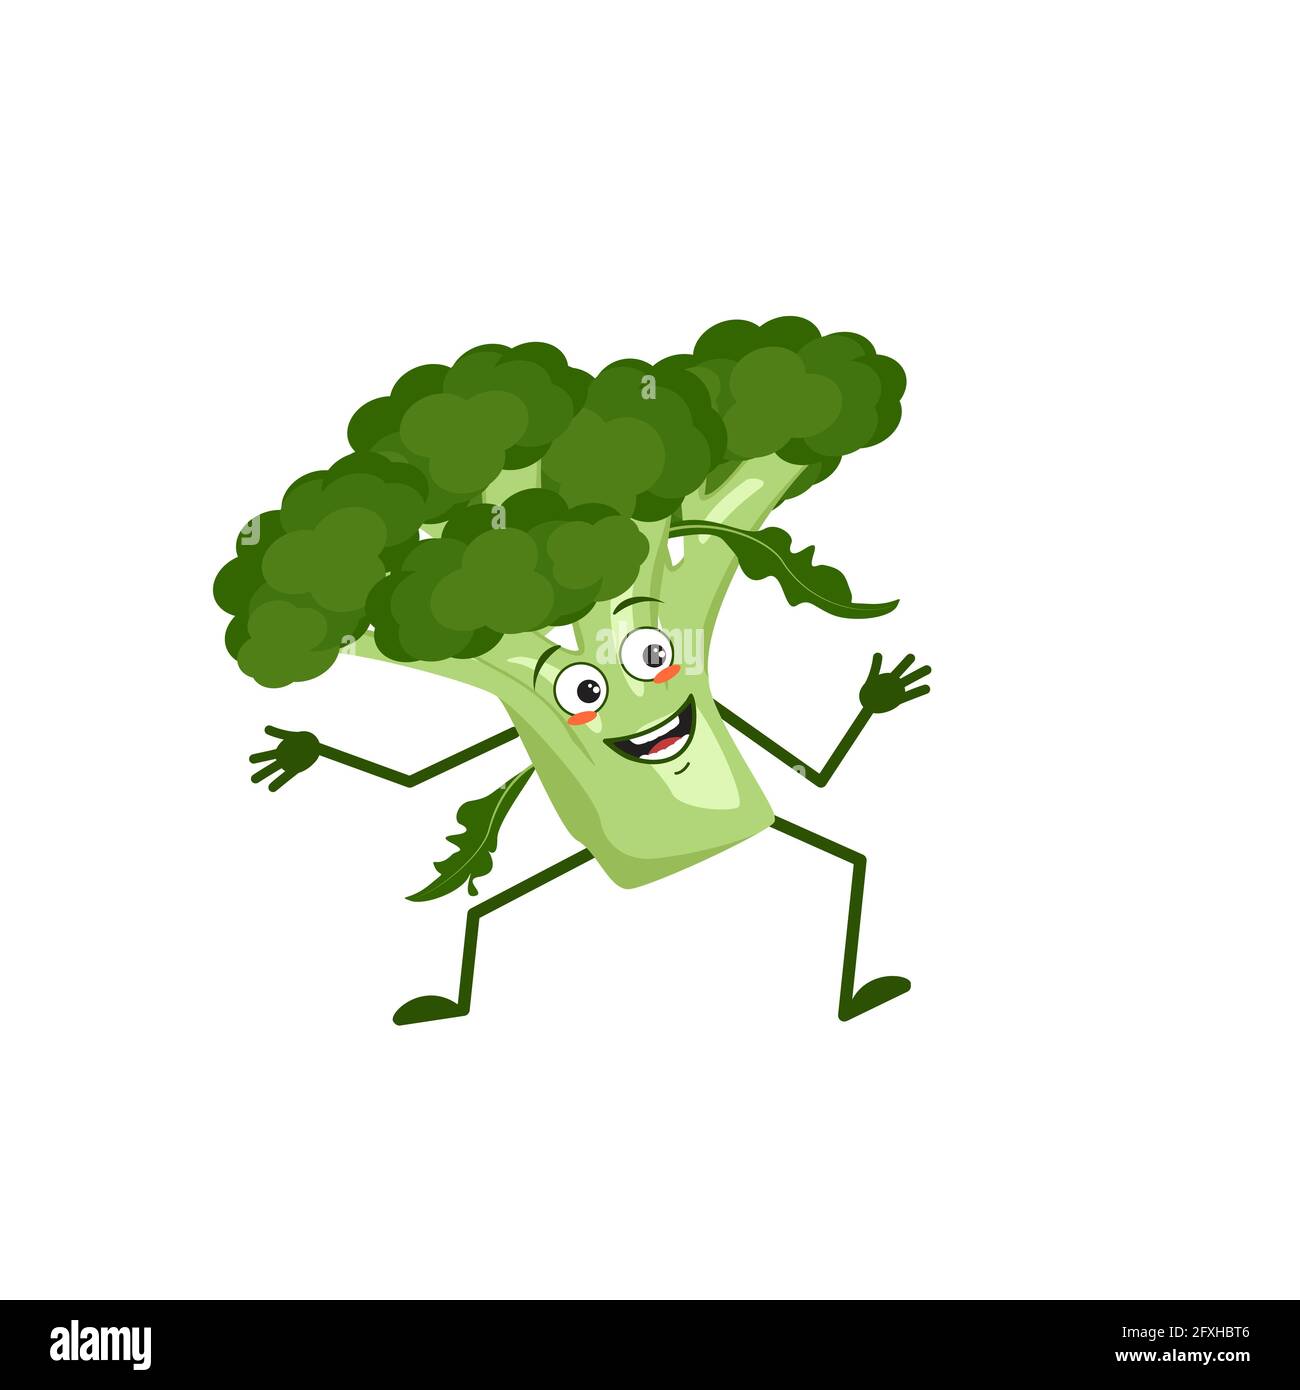 Carino carattere broccoli con emozioni di gioia, volto sorridente, occhi felici, braccia e gambe. Un eroe vegetale verde malizioso con gli occhi Illustrazione Vettoriale